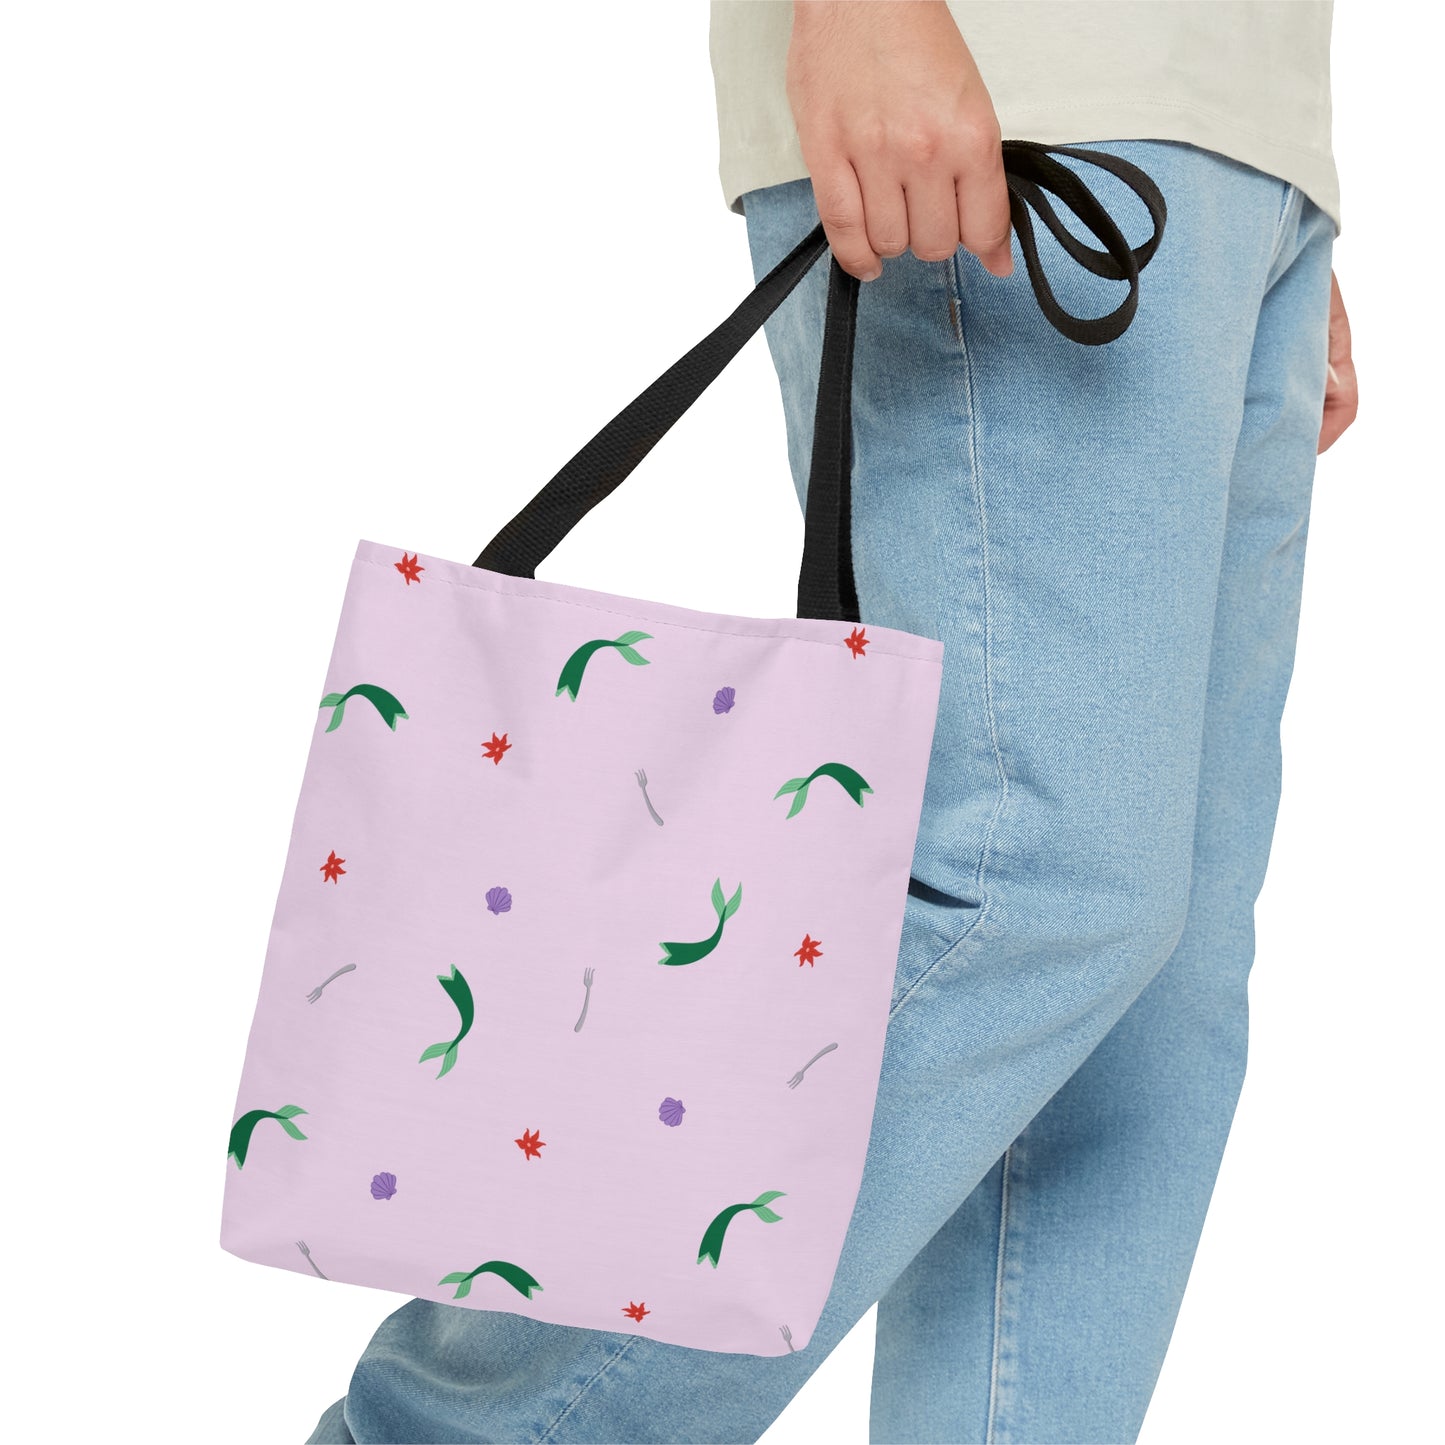 Ariel's Favorite Things - Little Mermaid Inspired Tote Bag